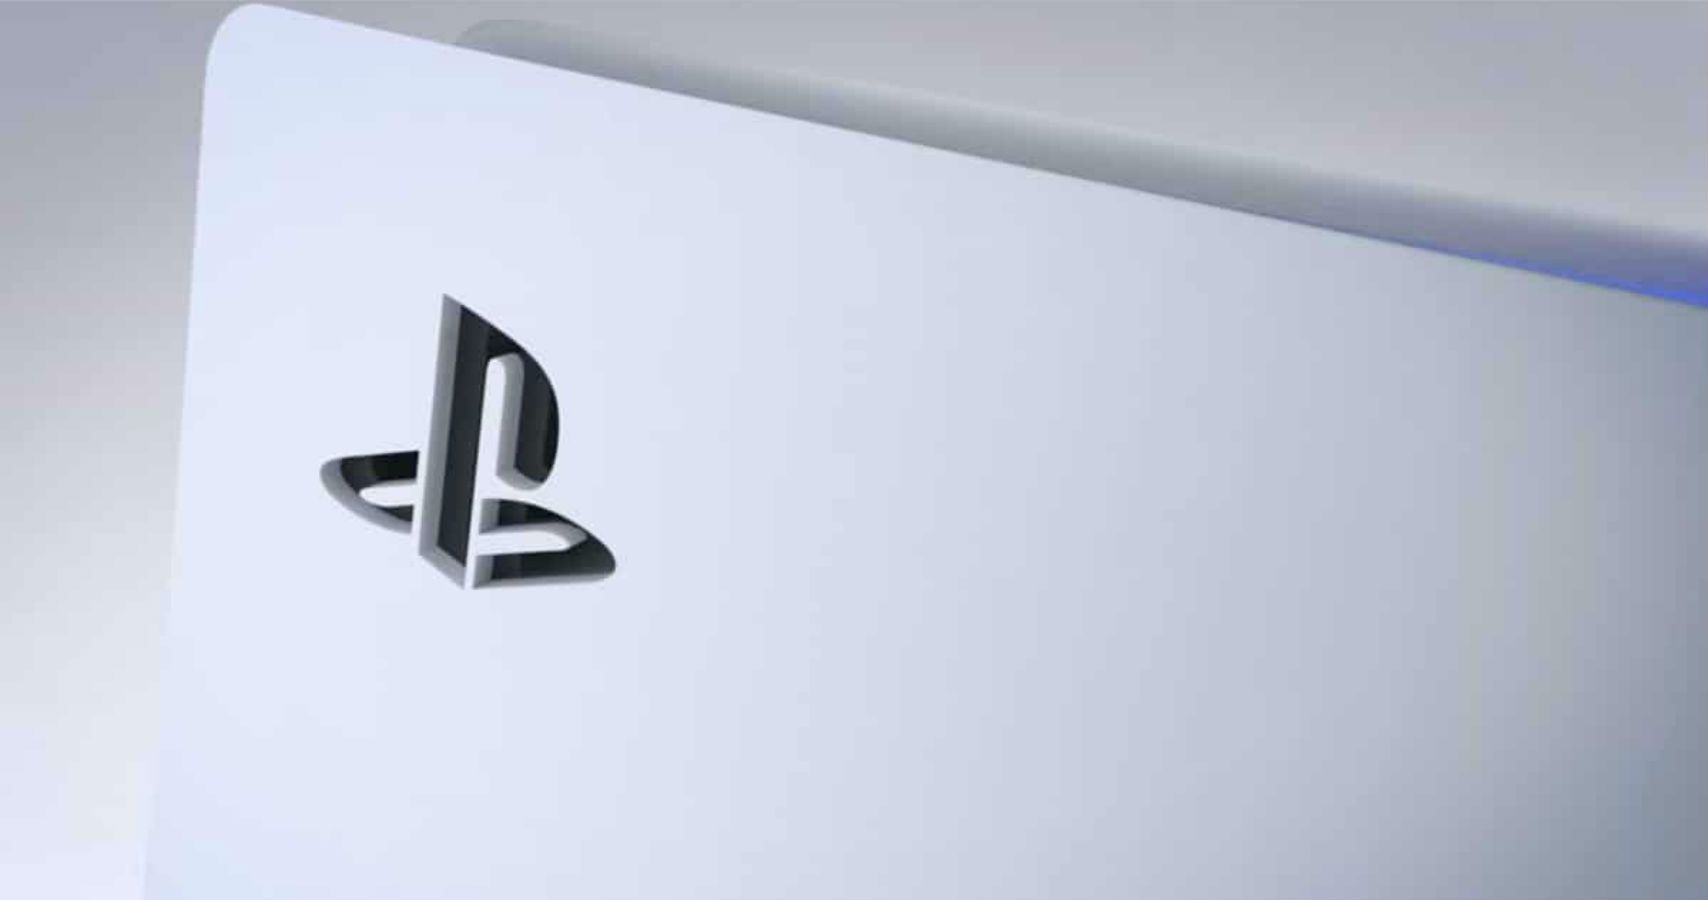 Sony diz o tempo de vida do Playstation 5 - Windows Club